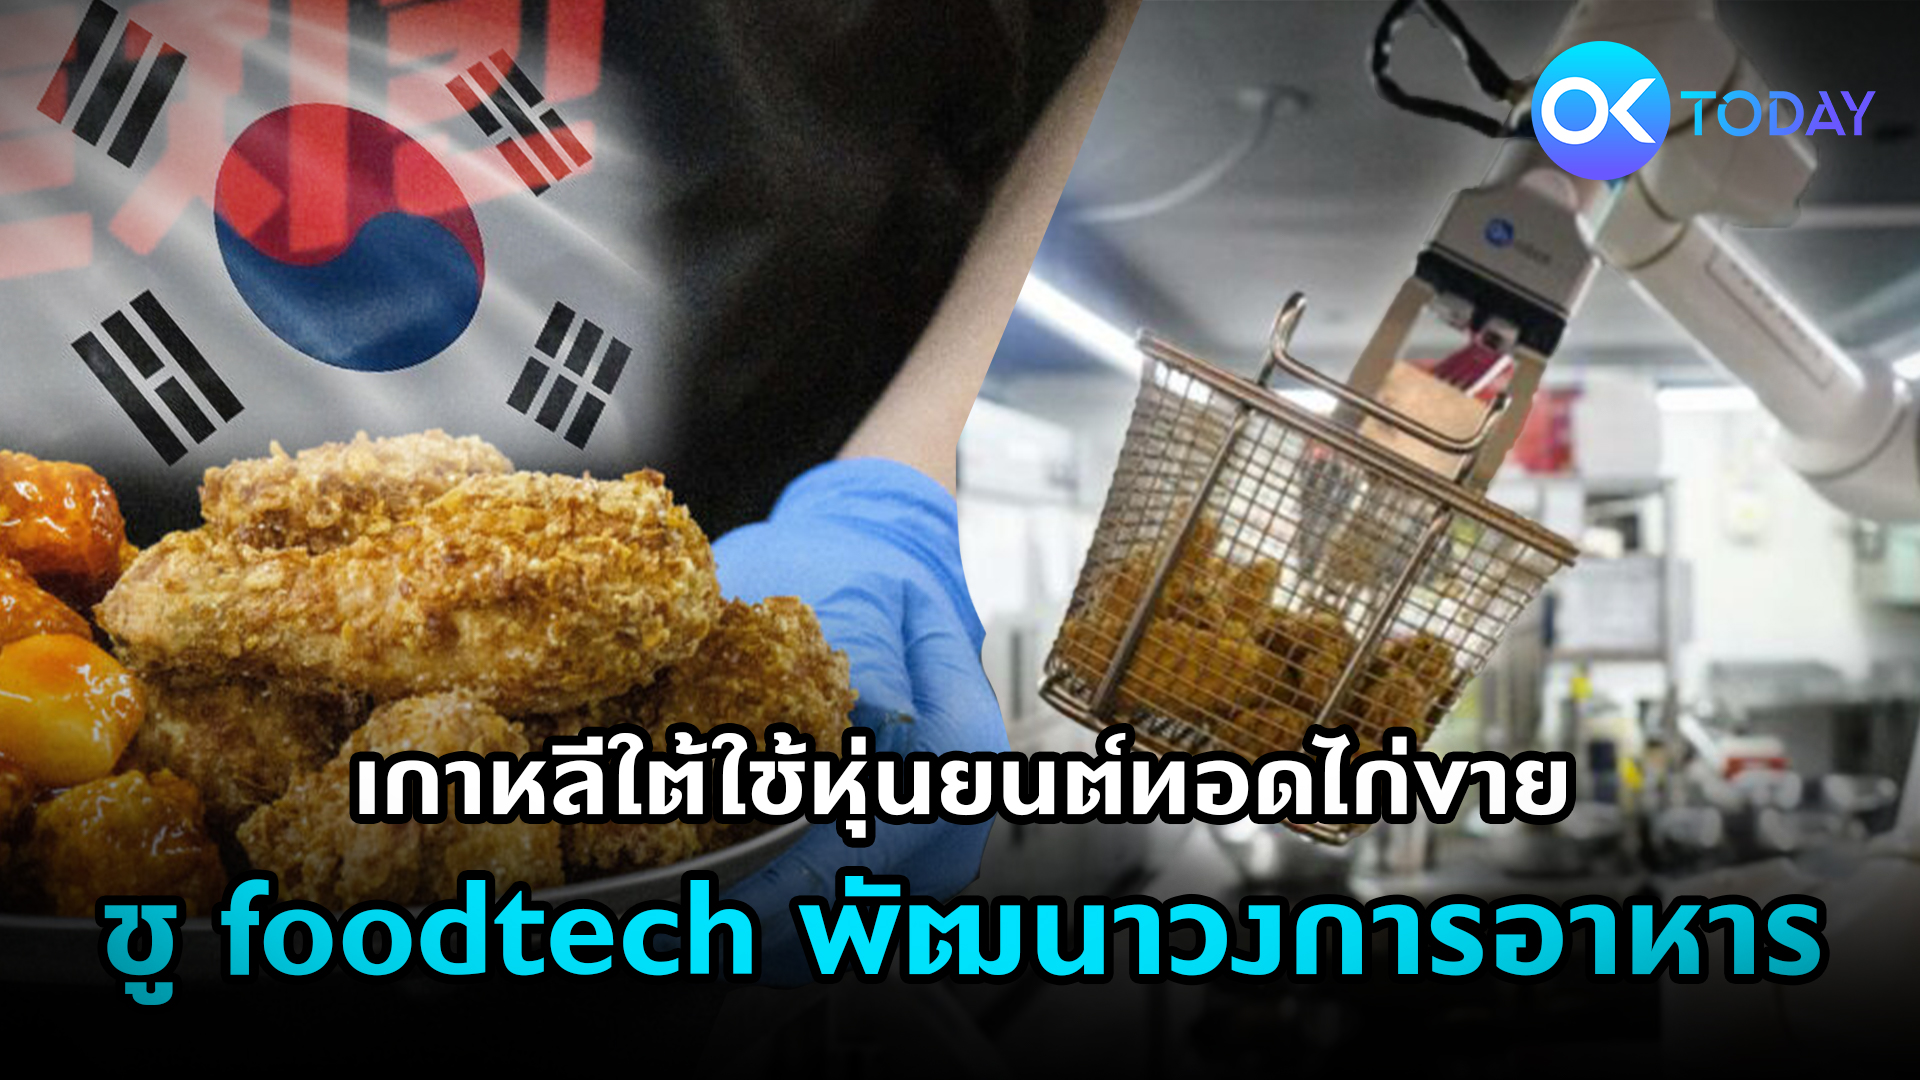 เกาหลีใต้ใช้หุ่นยนต์ทอดไก่ขาย ชูฟู้ดเทคพัฒนาวงการอาหาร